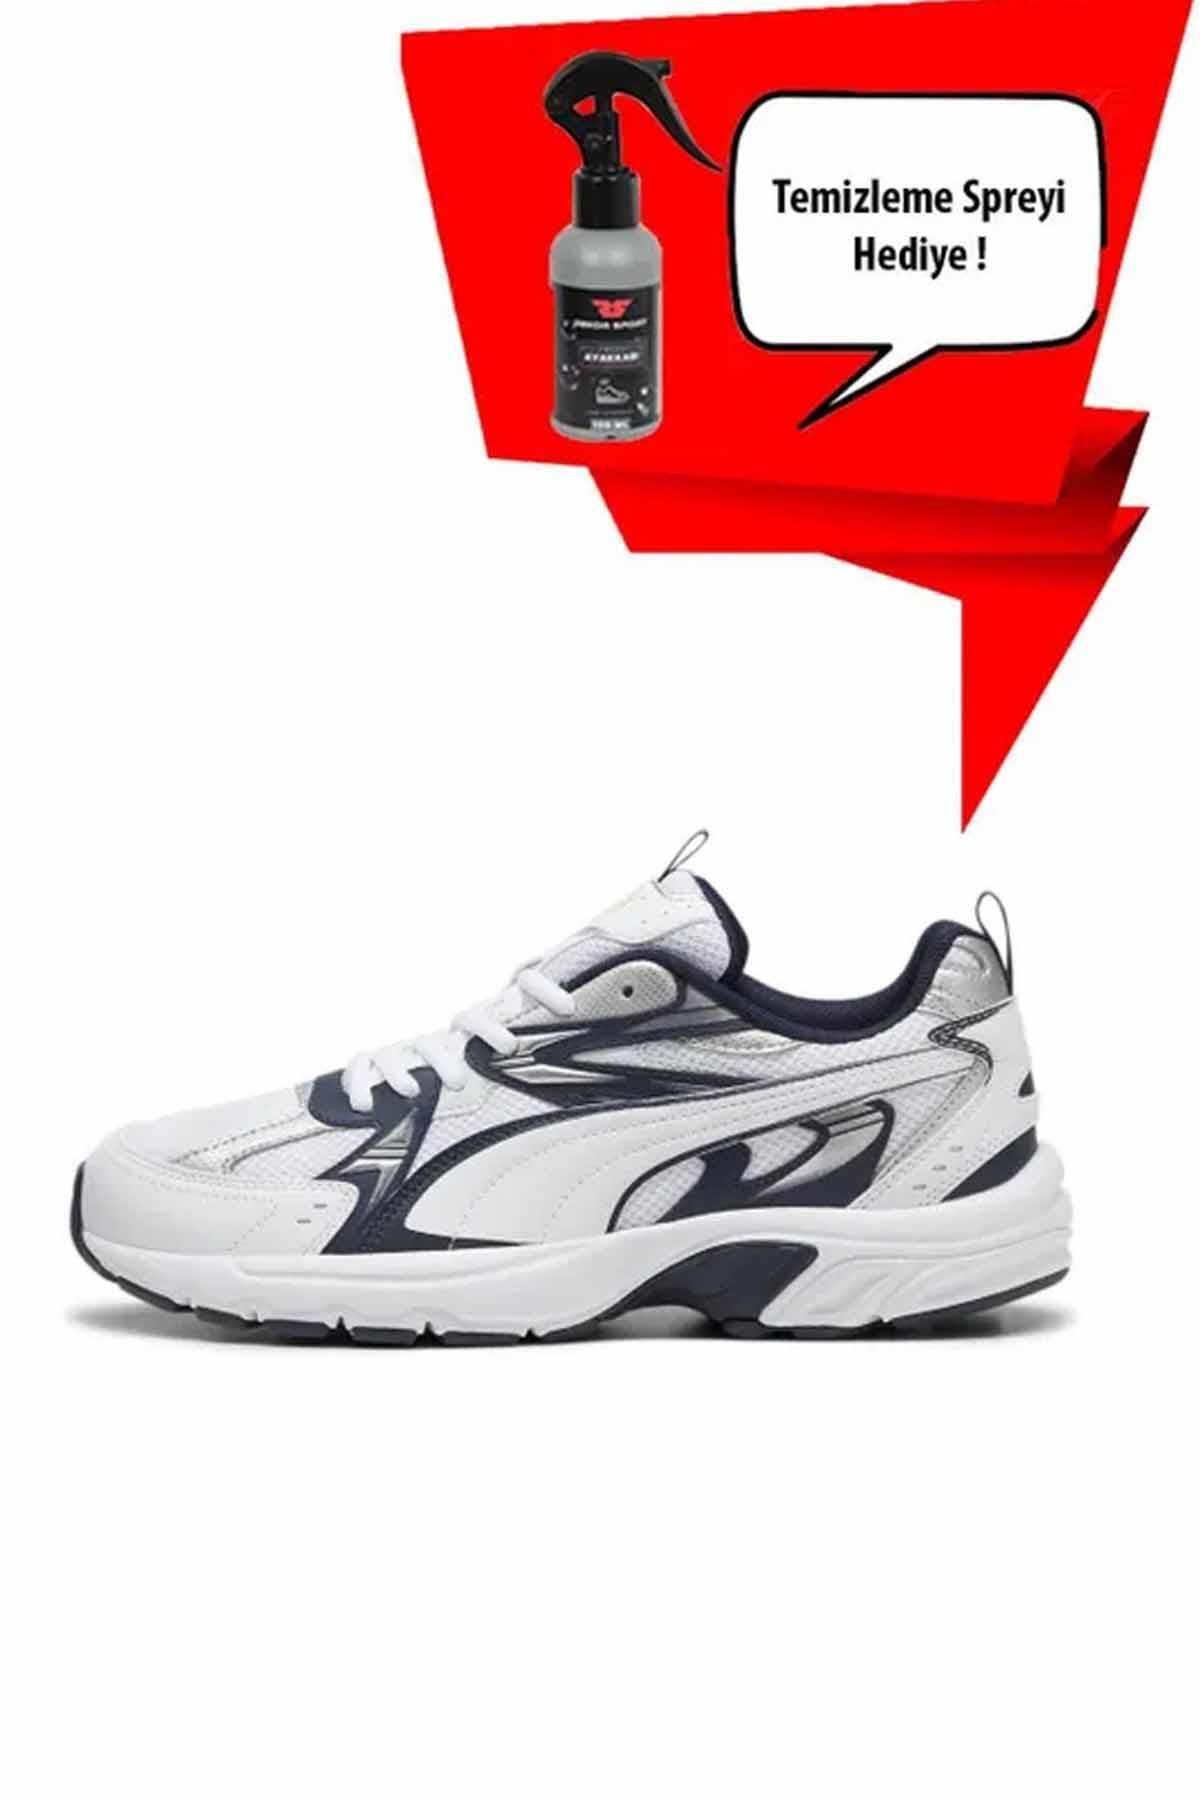 Puma 540 Milenio (Temizleme Sipreyi Hediyeli ) Unisex Sneaker Ayakkabı 392322-05-1 Beyaz/Mavi